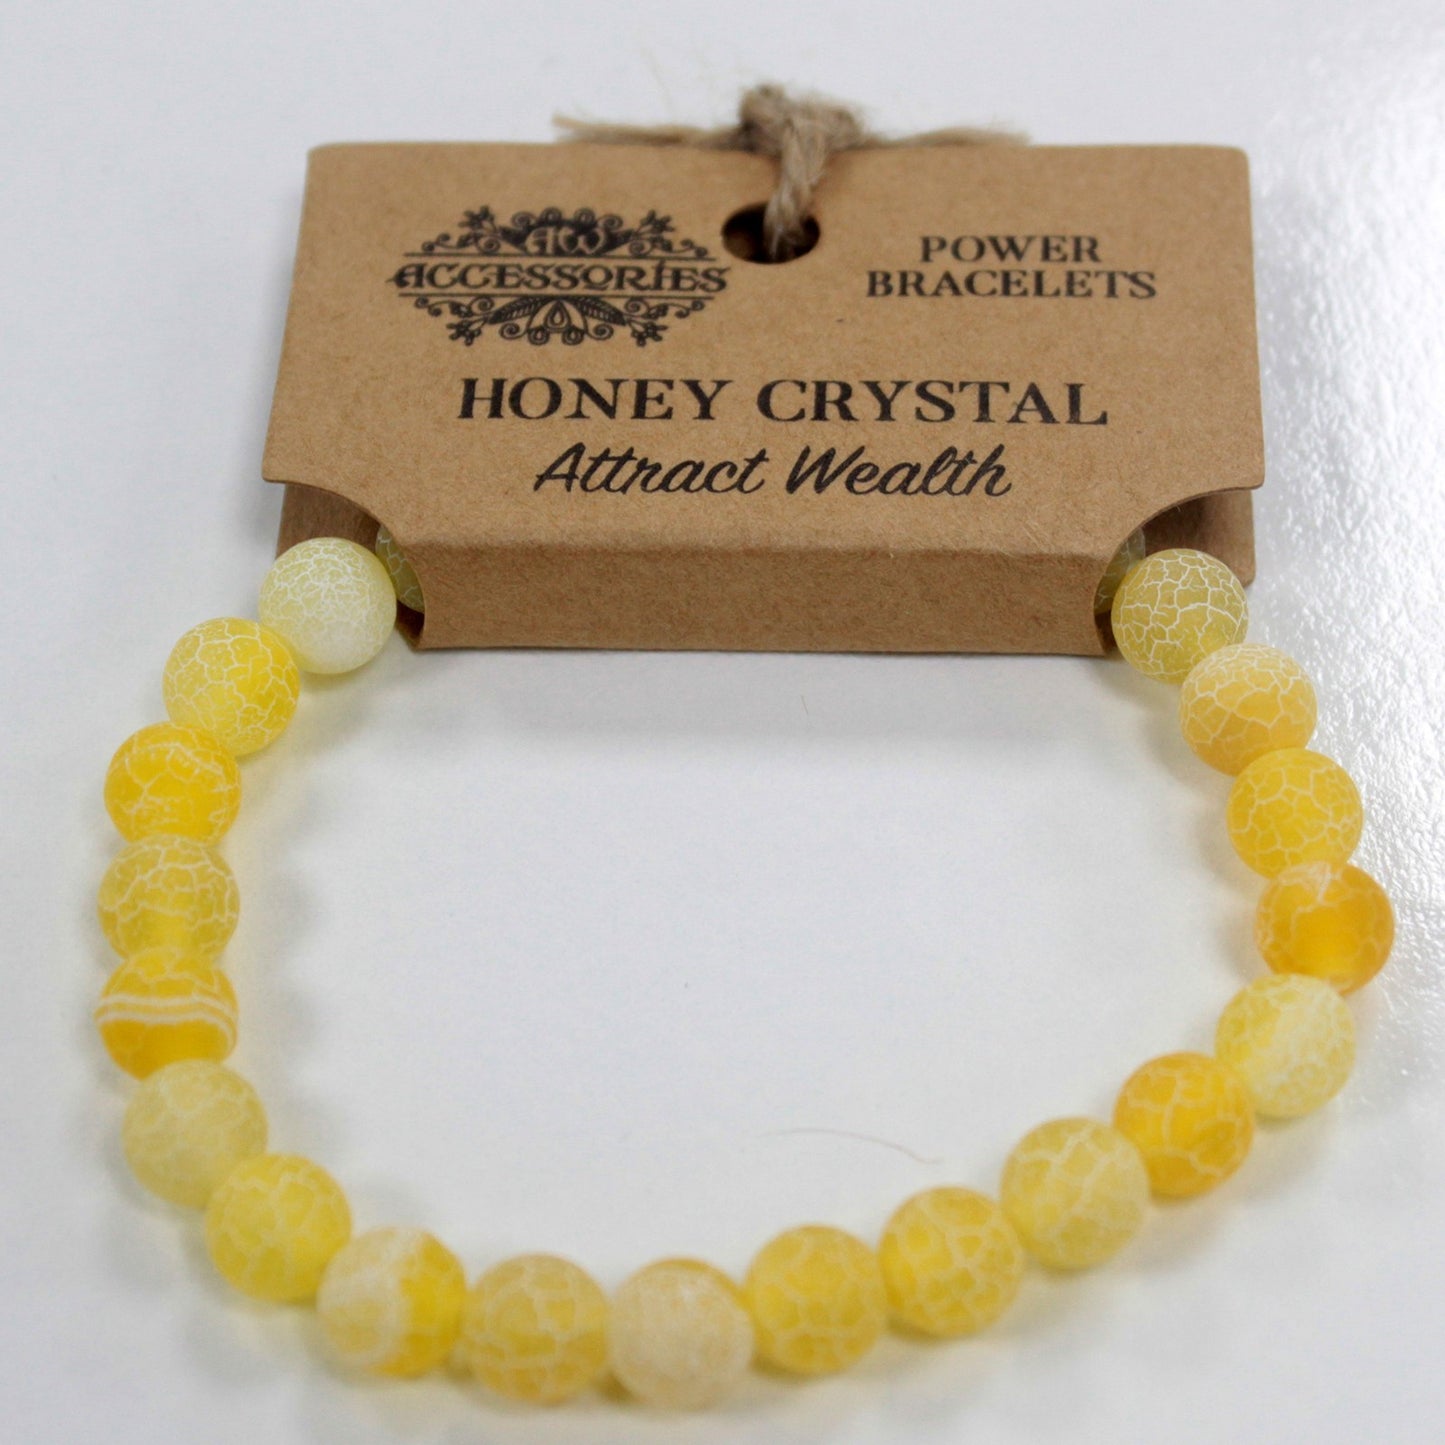 Pulsera brazalete de piedras amarillas de cristal de miel con etiqueta de cartón para colgar en expositor